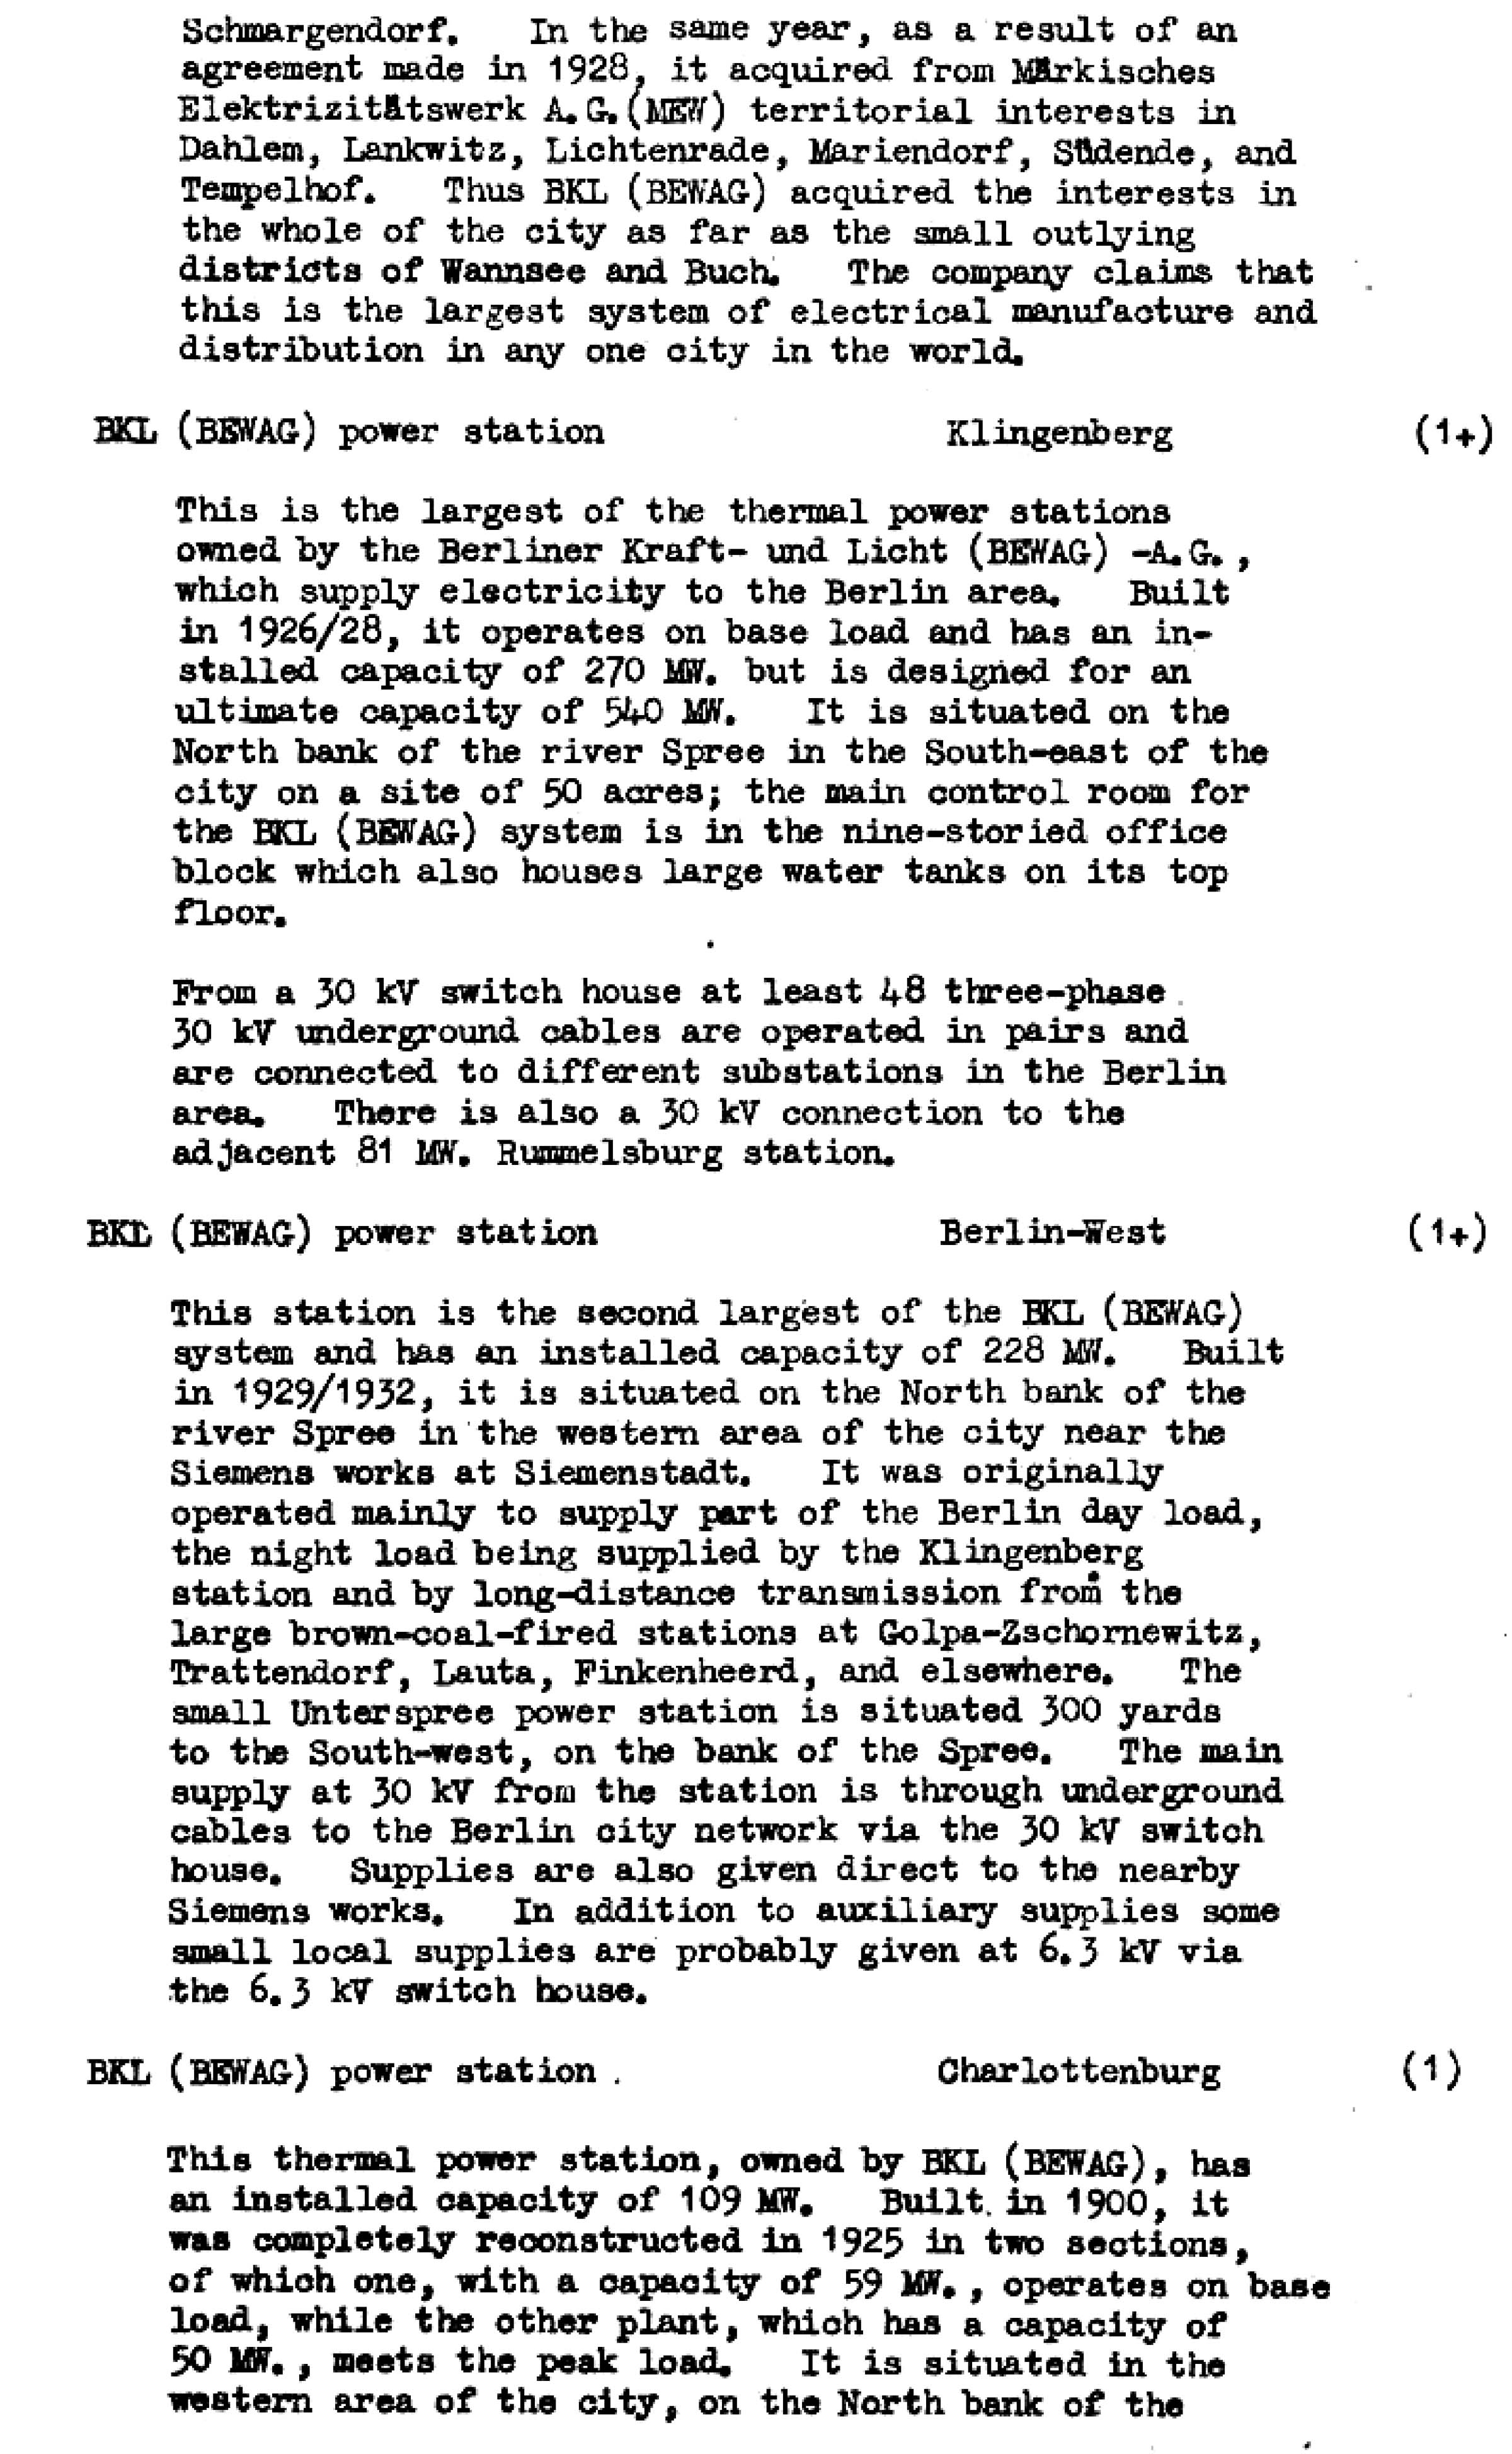 Die Ziele der alliierten Luftangriffe in Berlin im Zeiten Weltkrieg im Bomber's Baedeker - Originaldokument Seite 35